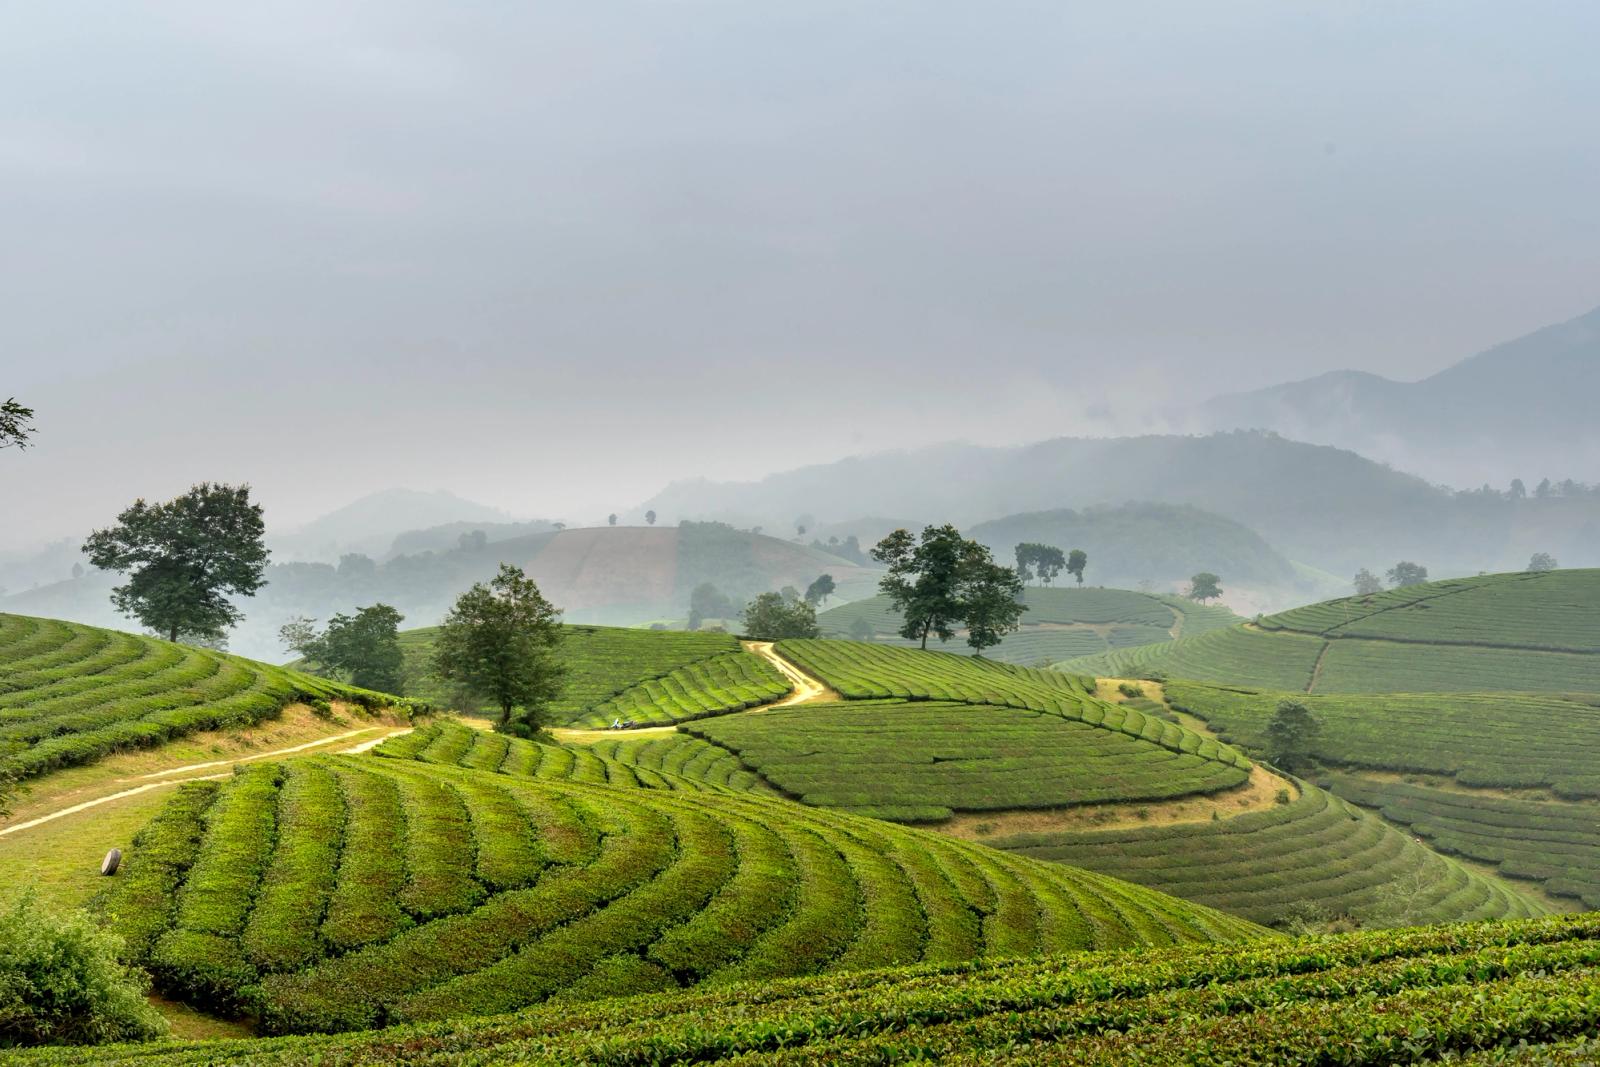 campi coltivati nelle colline vietnamite